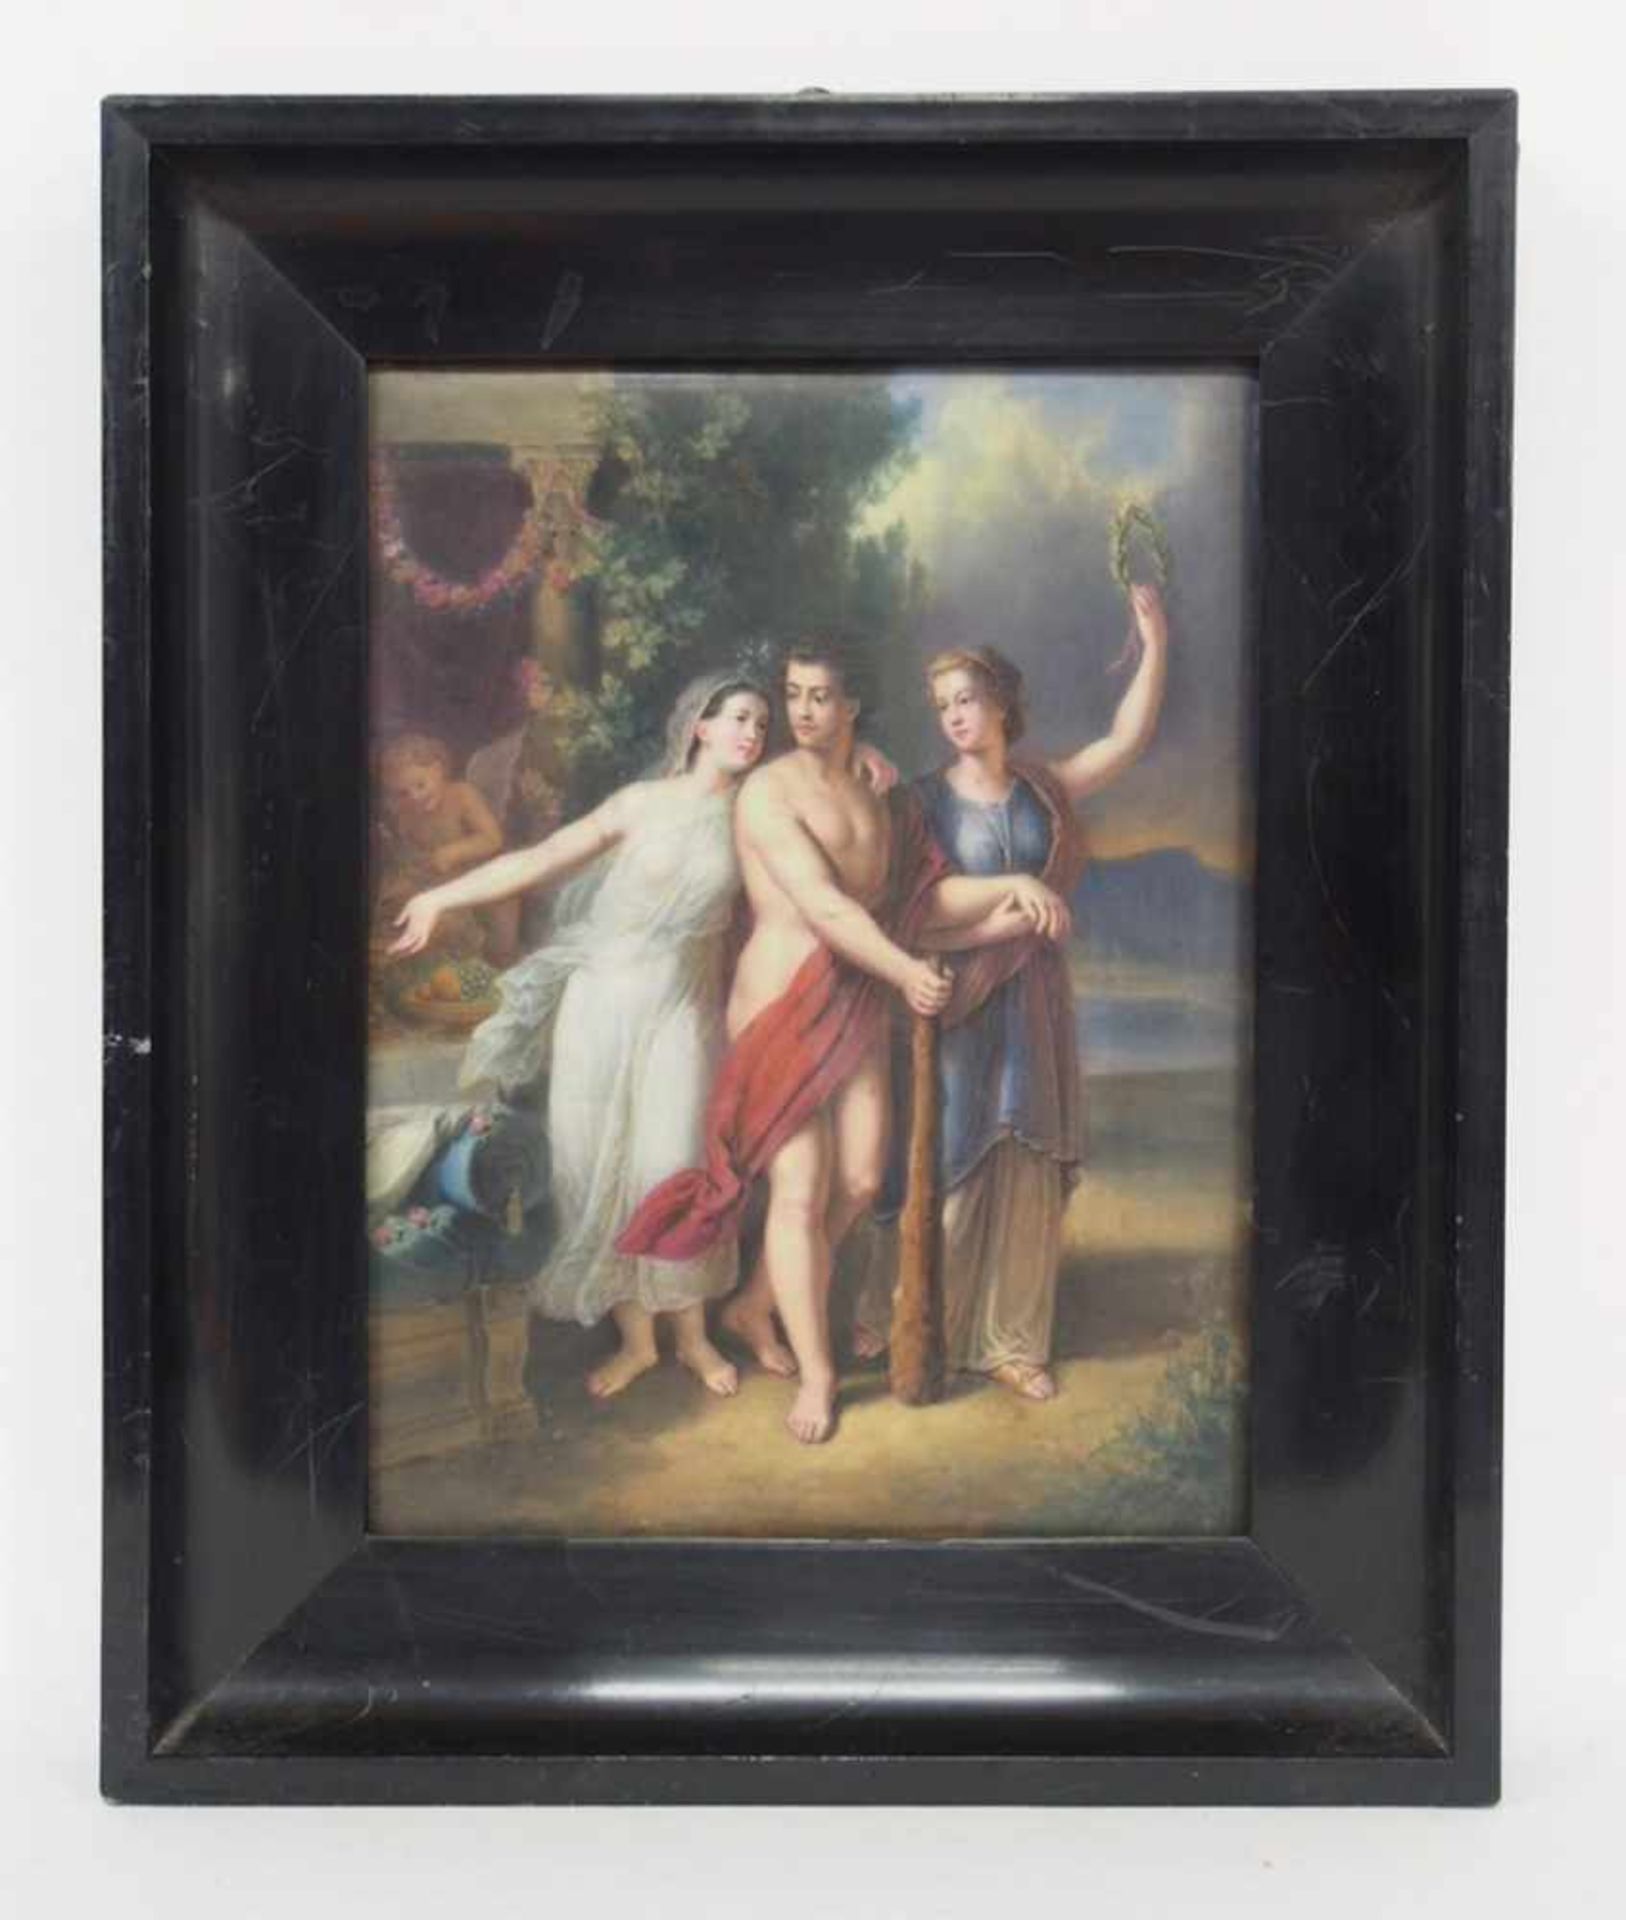 DEUTSCHER MEISTER19. Jh.Herkules am ScheidewegPorzellanbild, 30 x 23 cm, Rahmen- - -25.00 % buyer' - Bild 2 aus 2